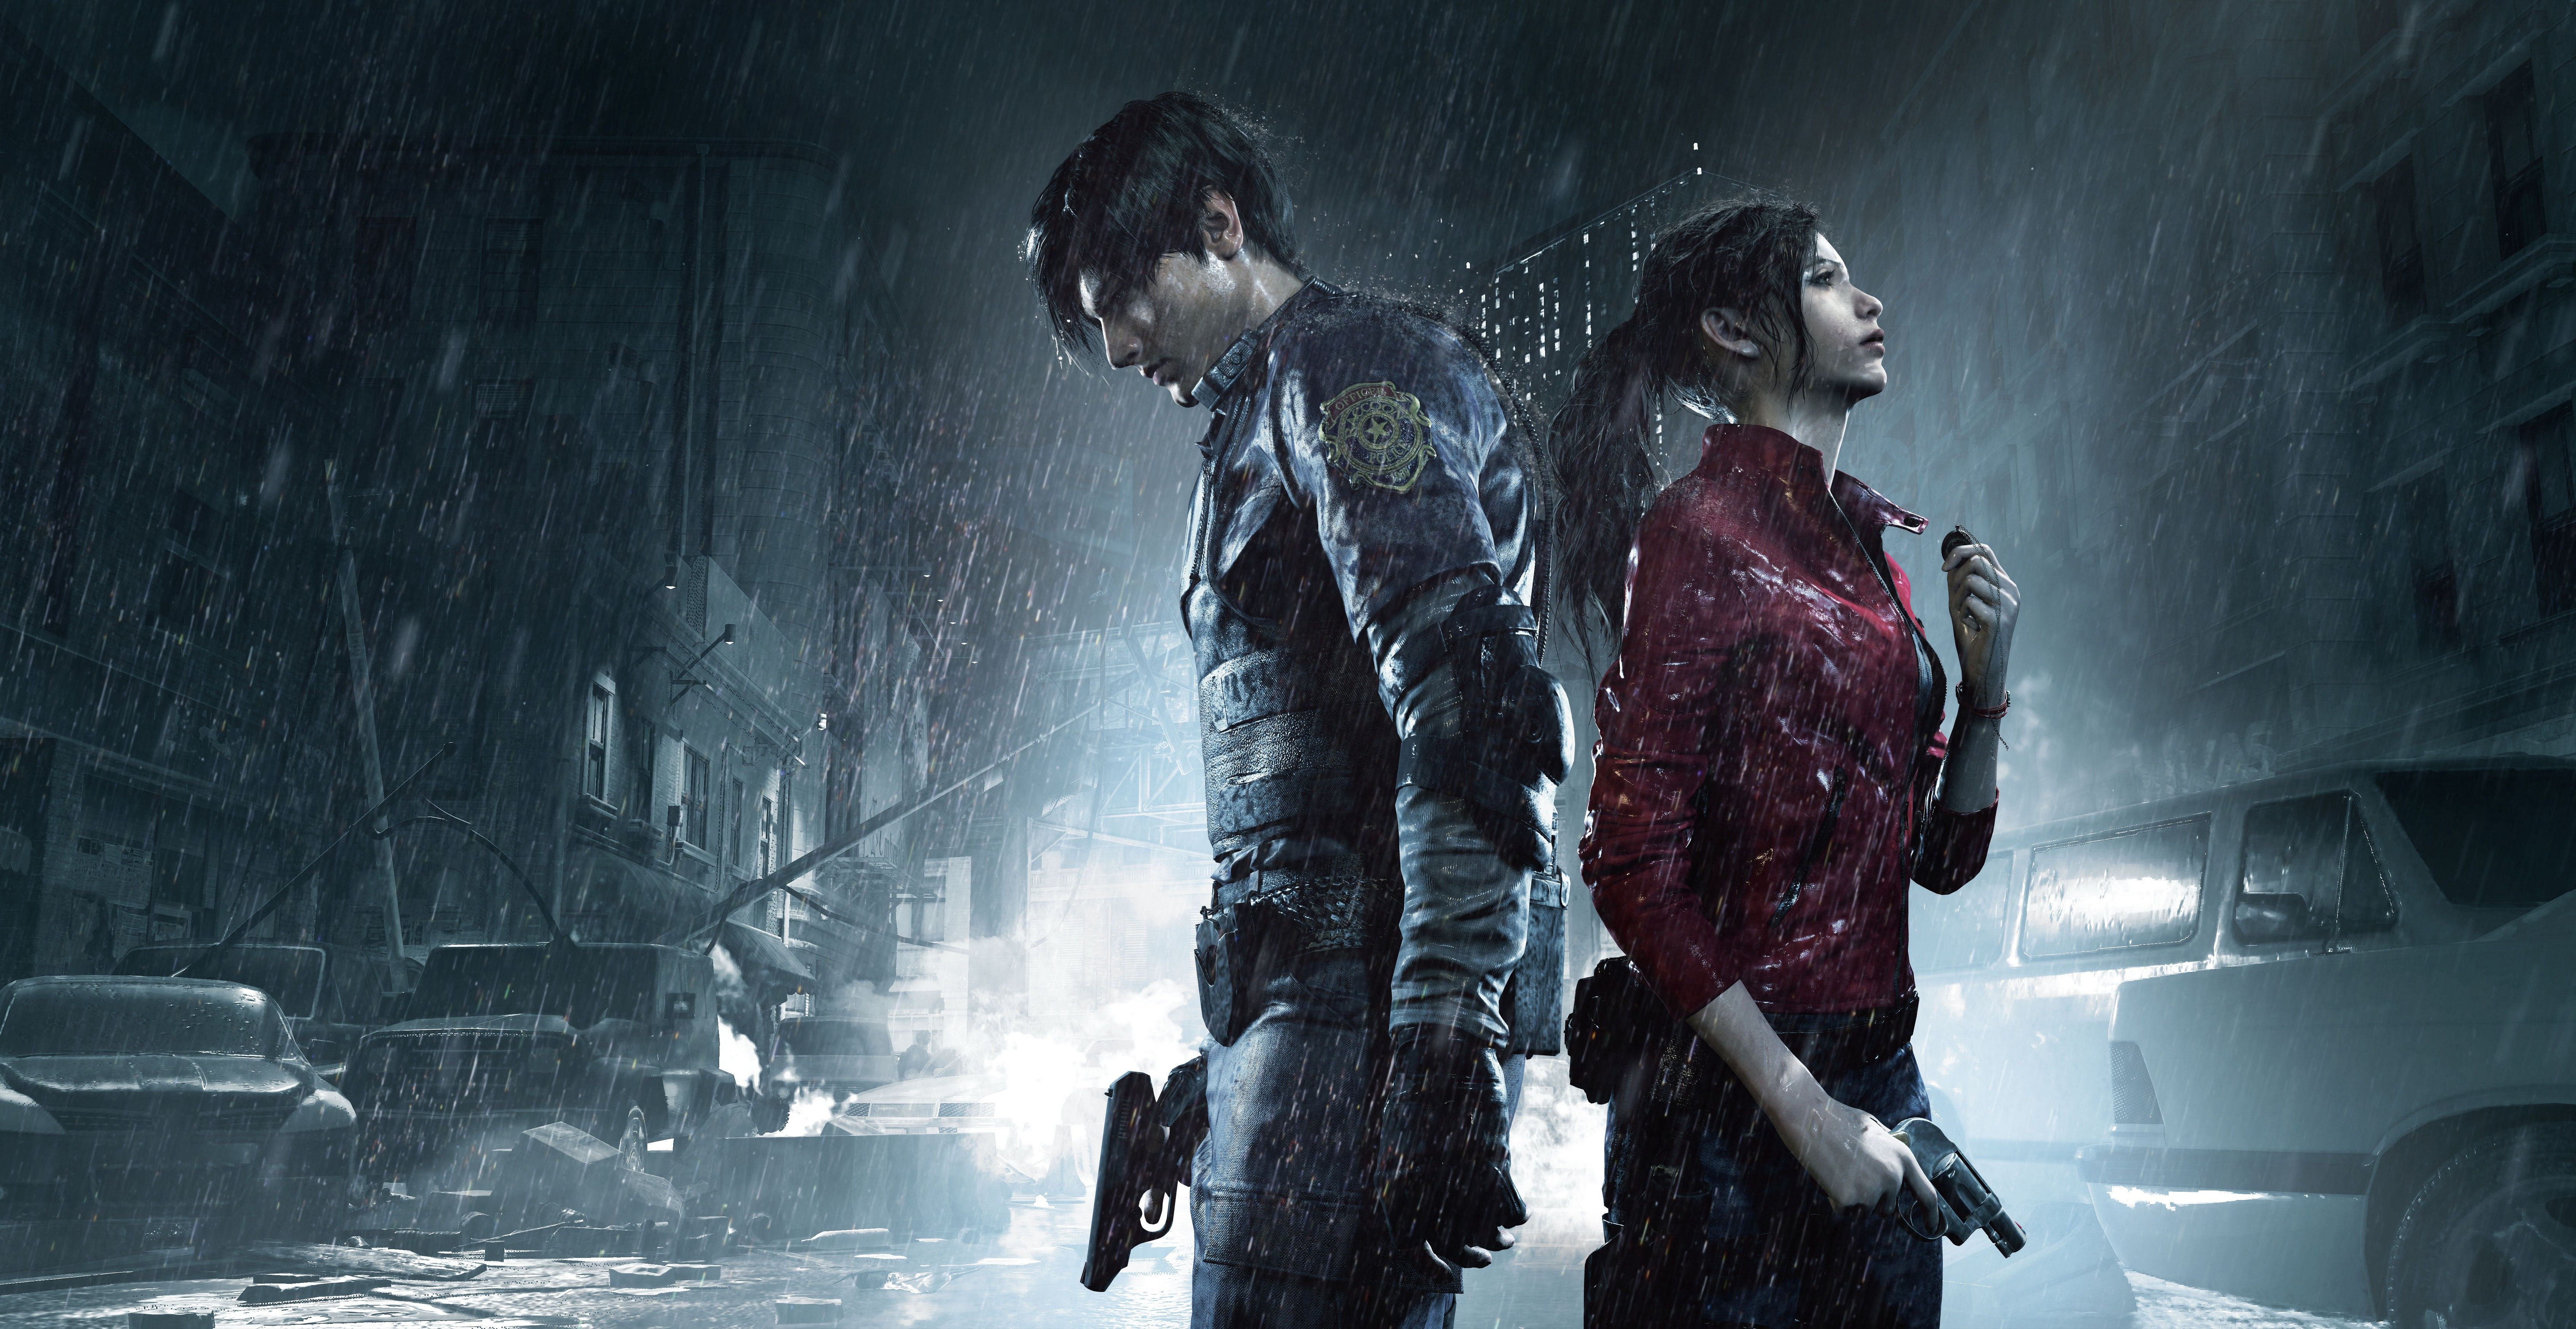 Resident Evil 2 2019 4k, HD Games, 4k Wallpaper, Image